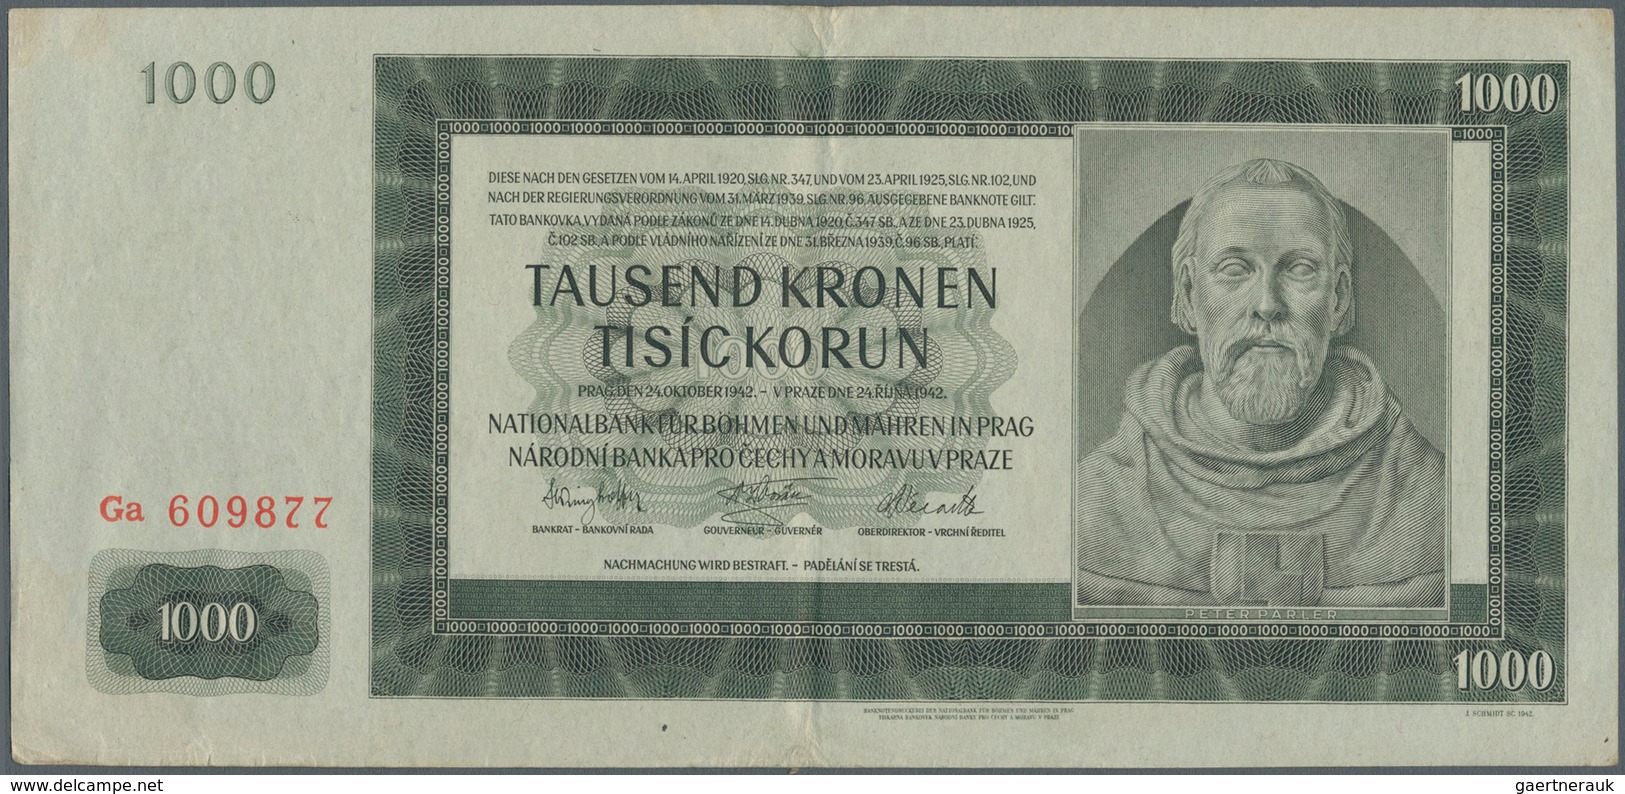 Deutschland - Sonstige: Konvolut mit 387 Banknoten Deutsches Reich bis DDR, Länderbanknoten und etwa